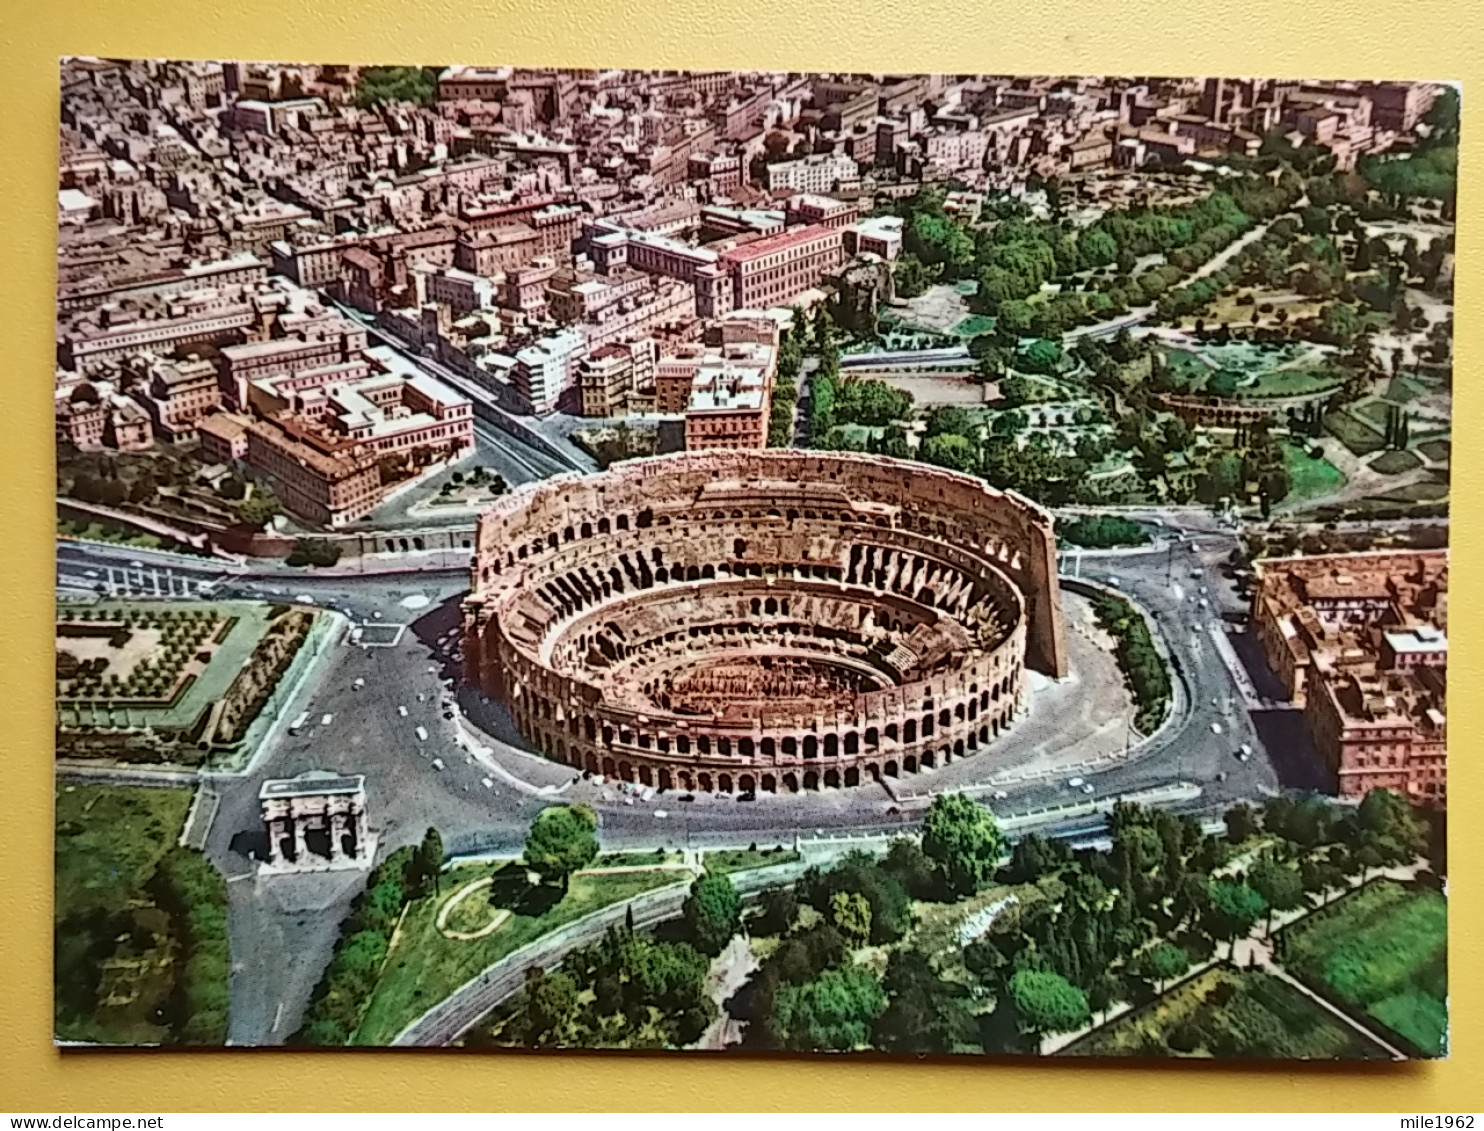 KOV 417-51 - ROMA, Italia, Colosseo, Coliseum, Colisee - Colisée